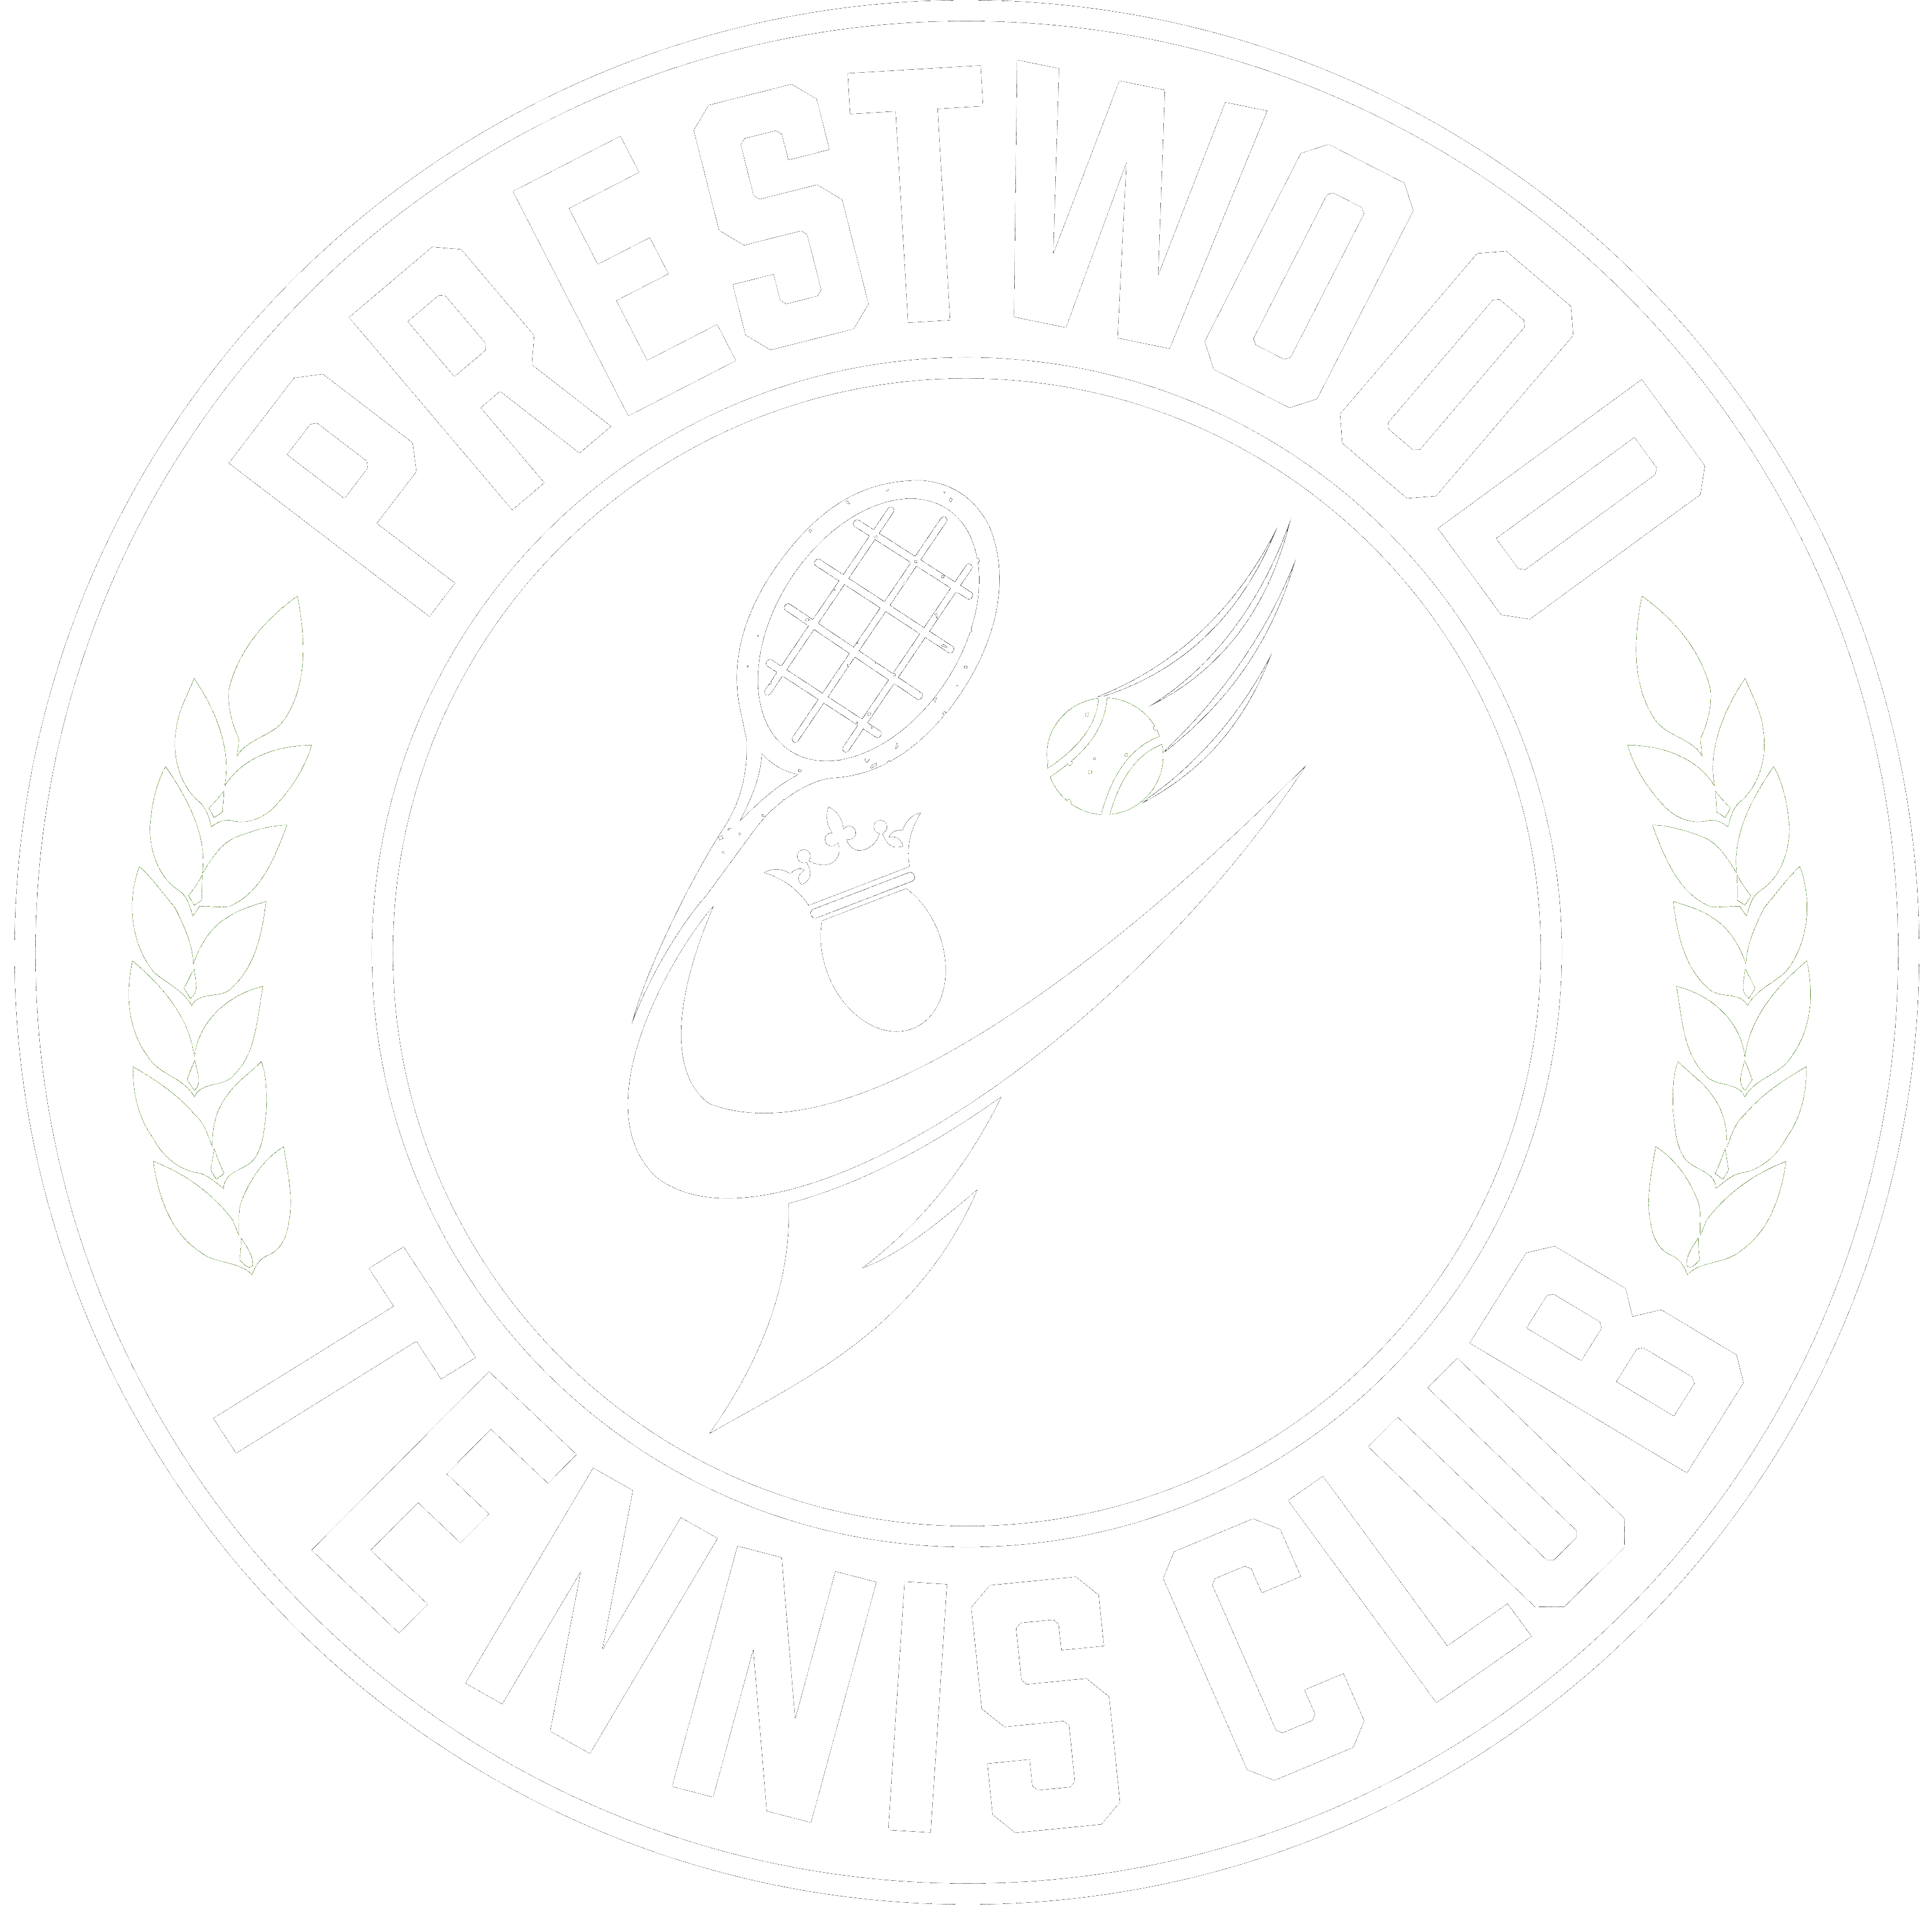 prestwood tennis club logo